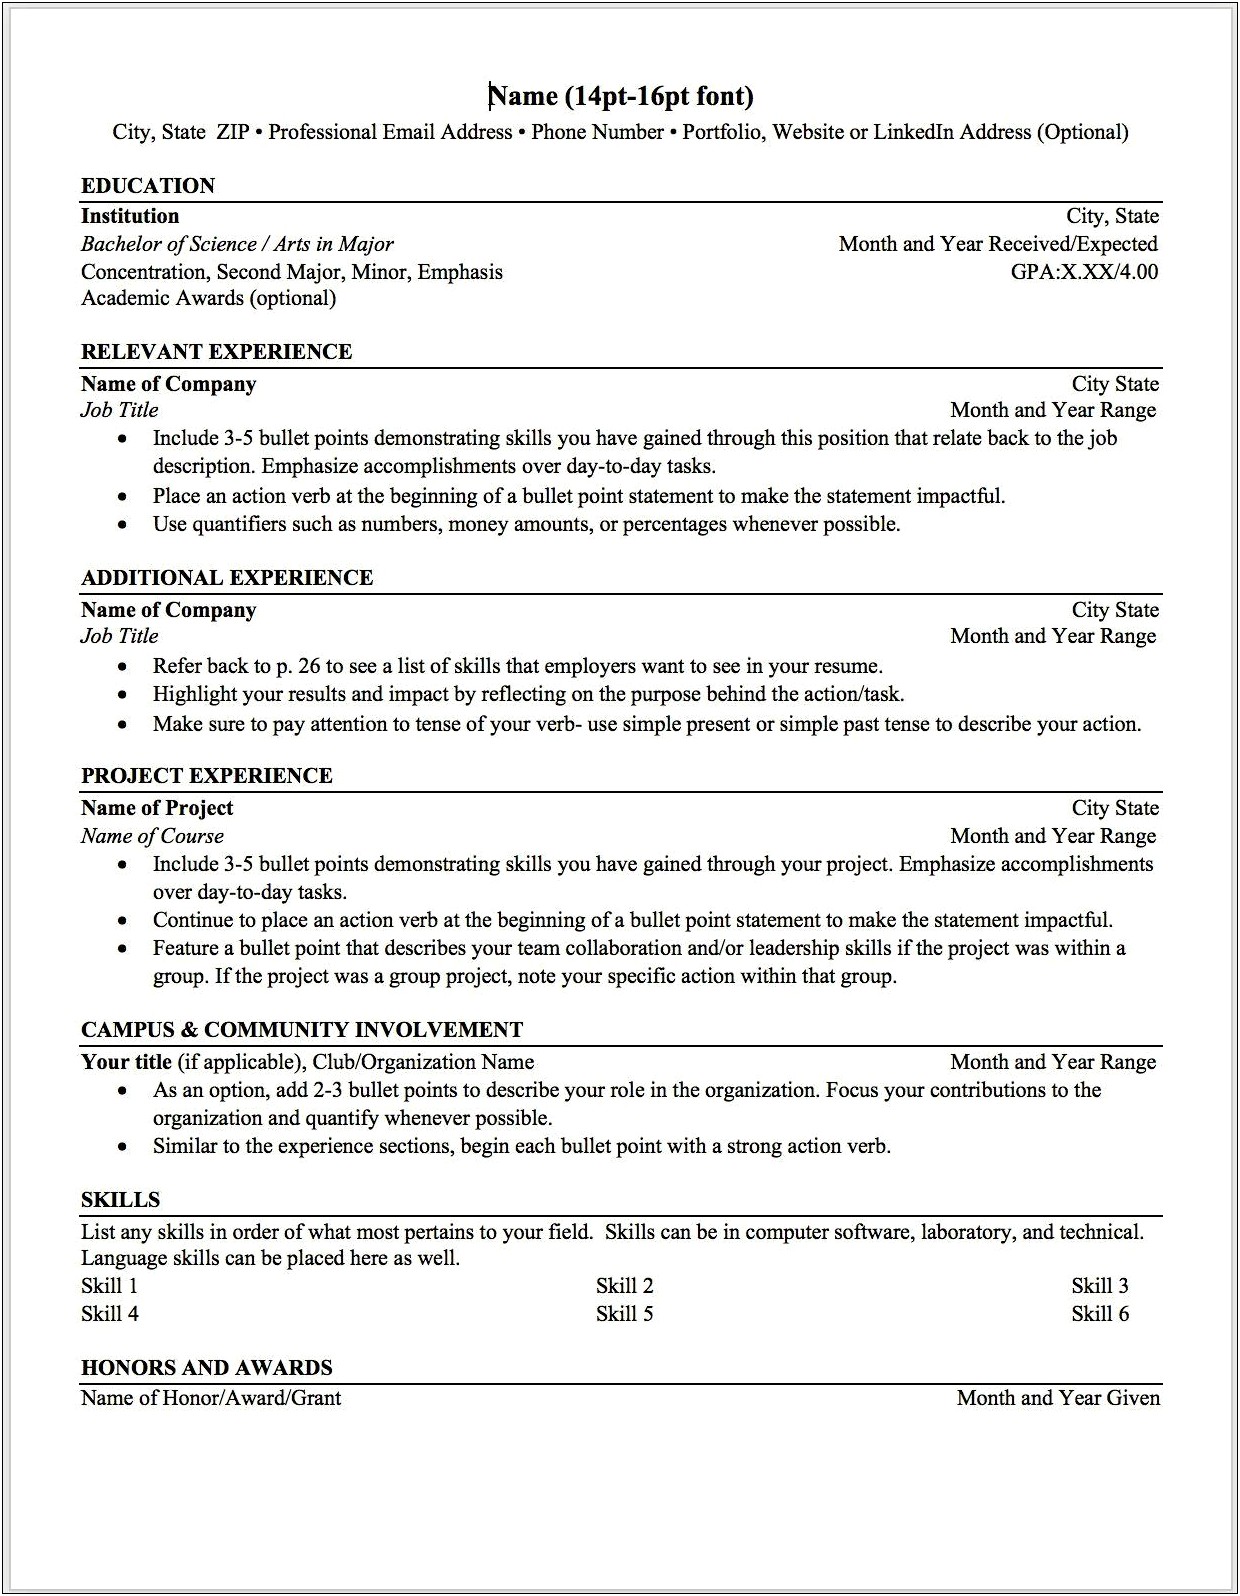 Résumé Designed To Obtain A Specific Job